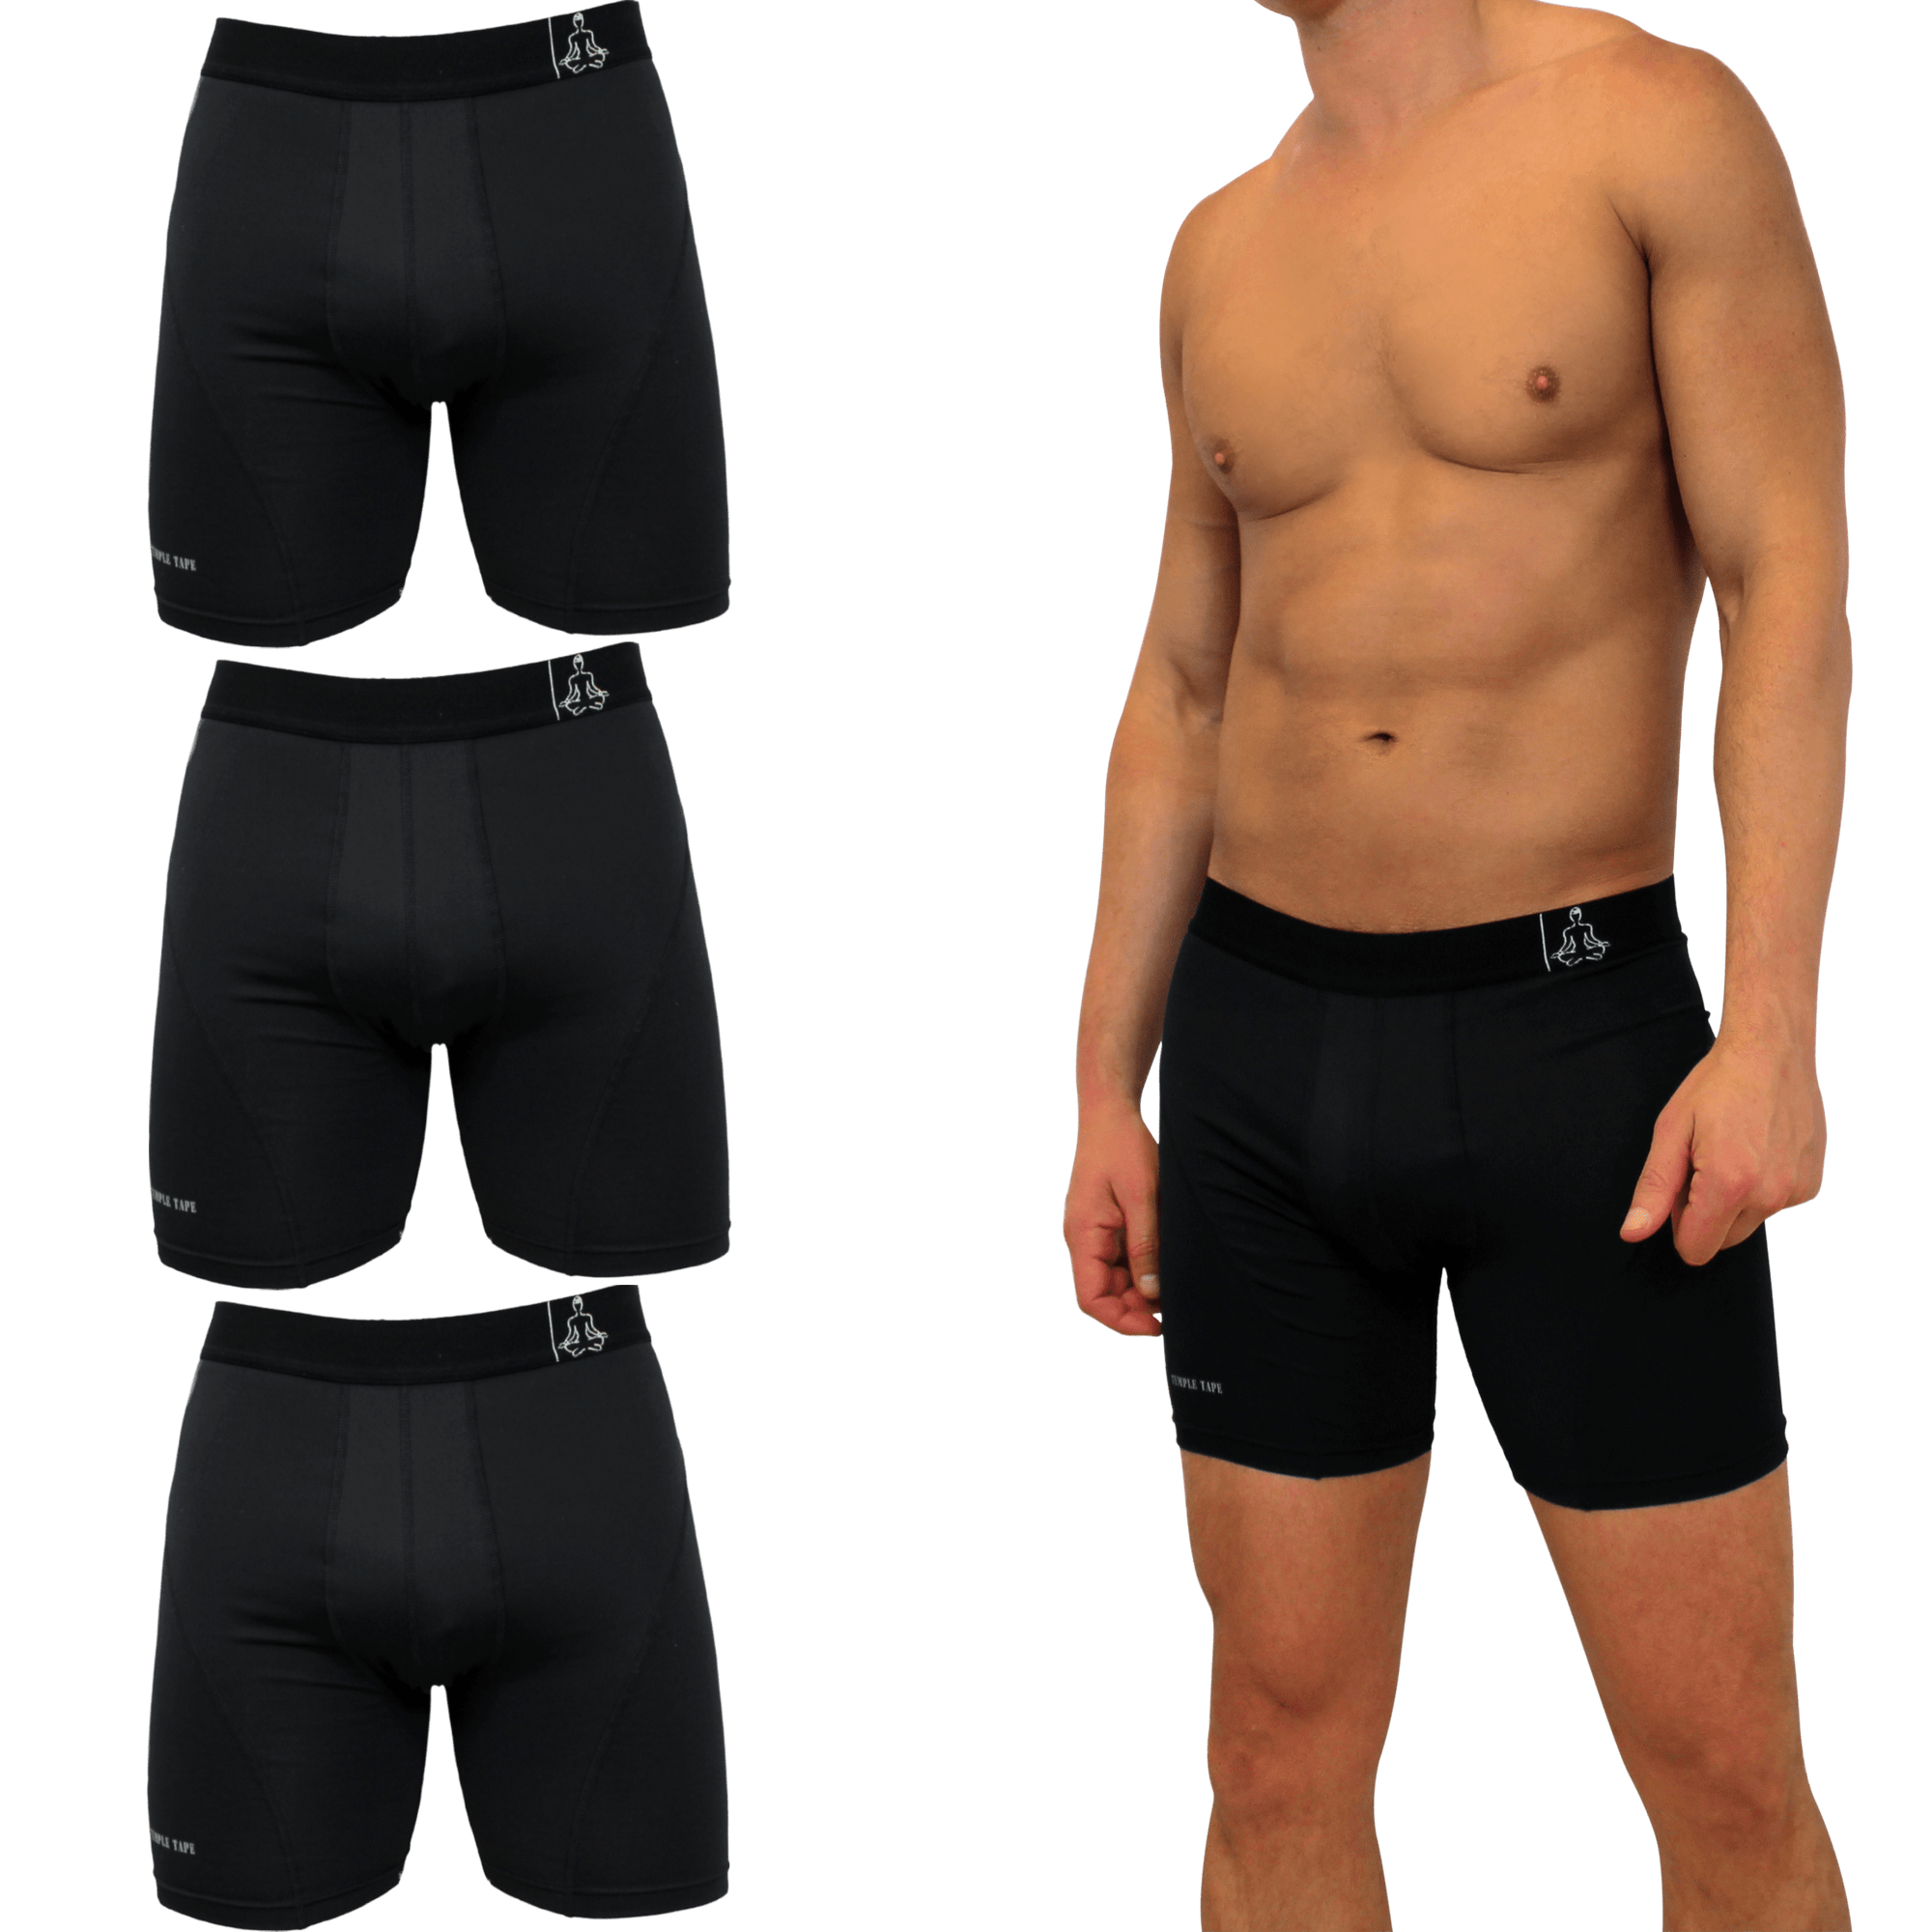 Sports Performance Underwear